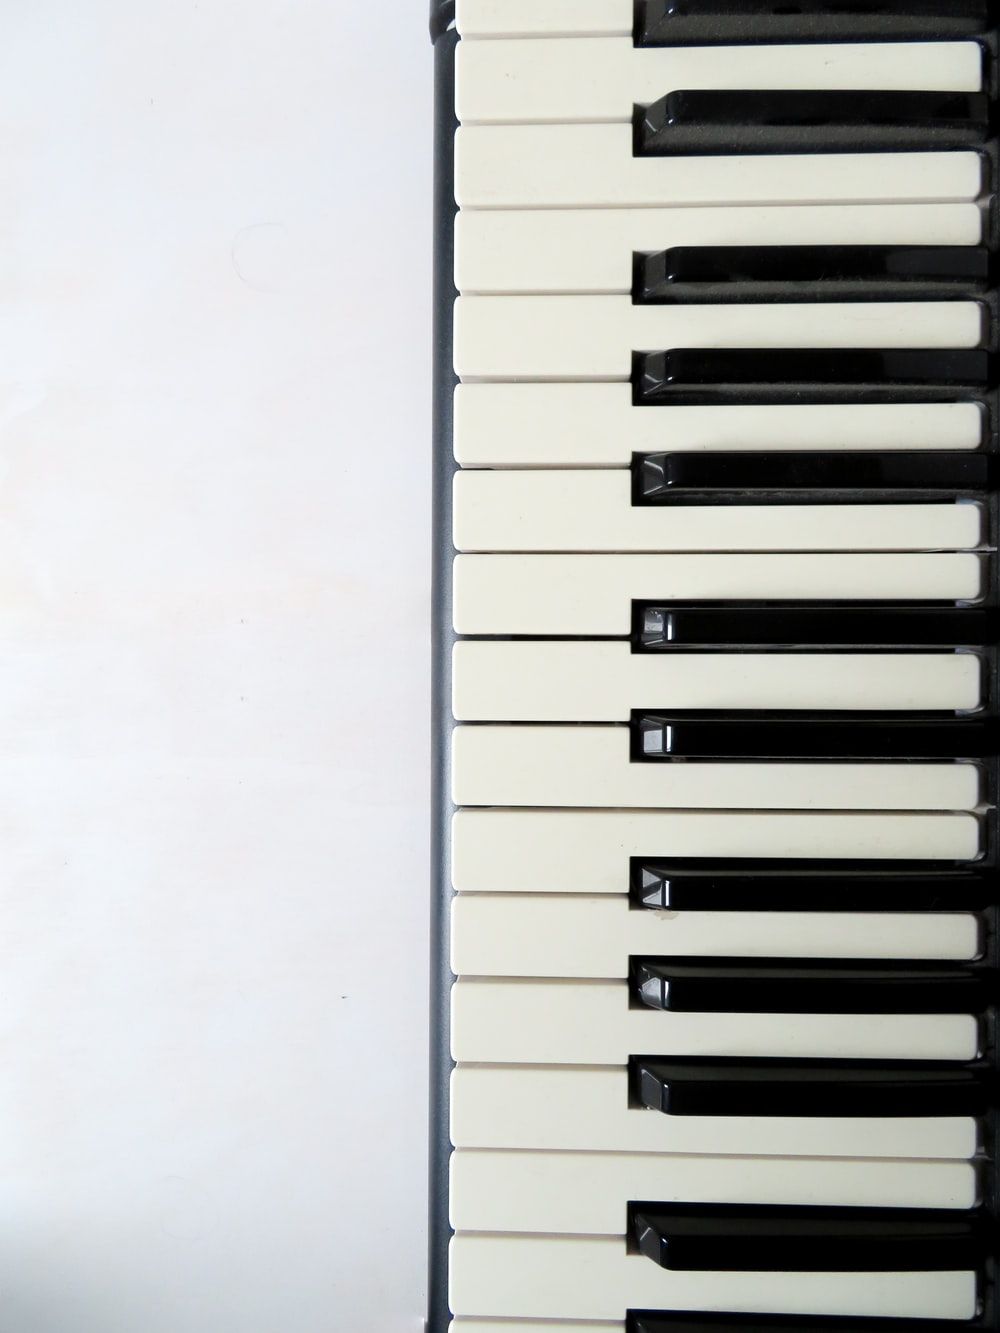 Piano Imágenes | Descargue imágenes y fotos gratis